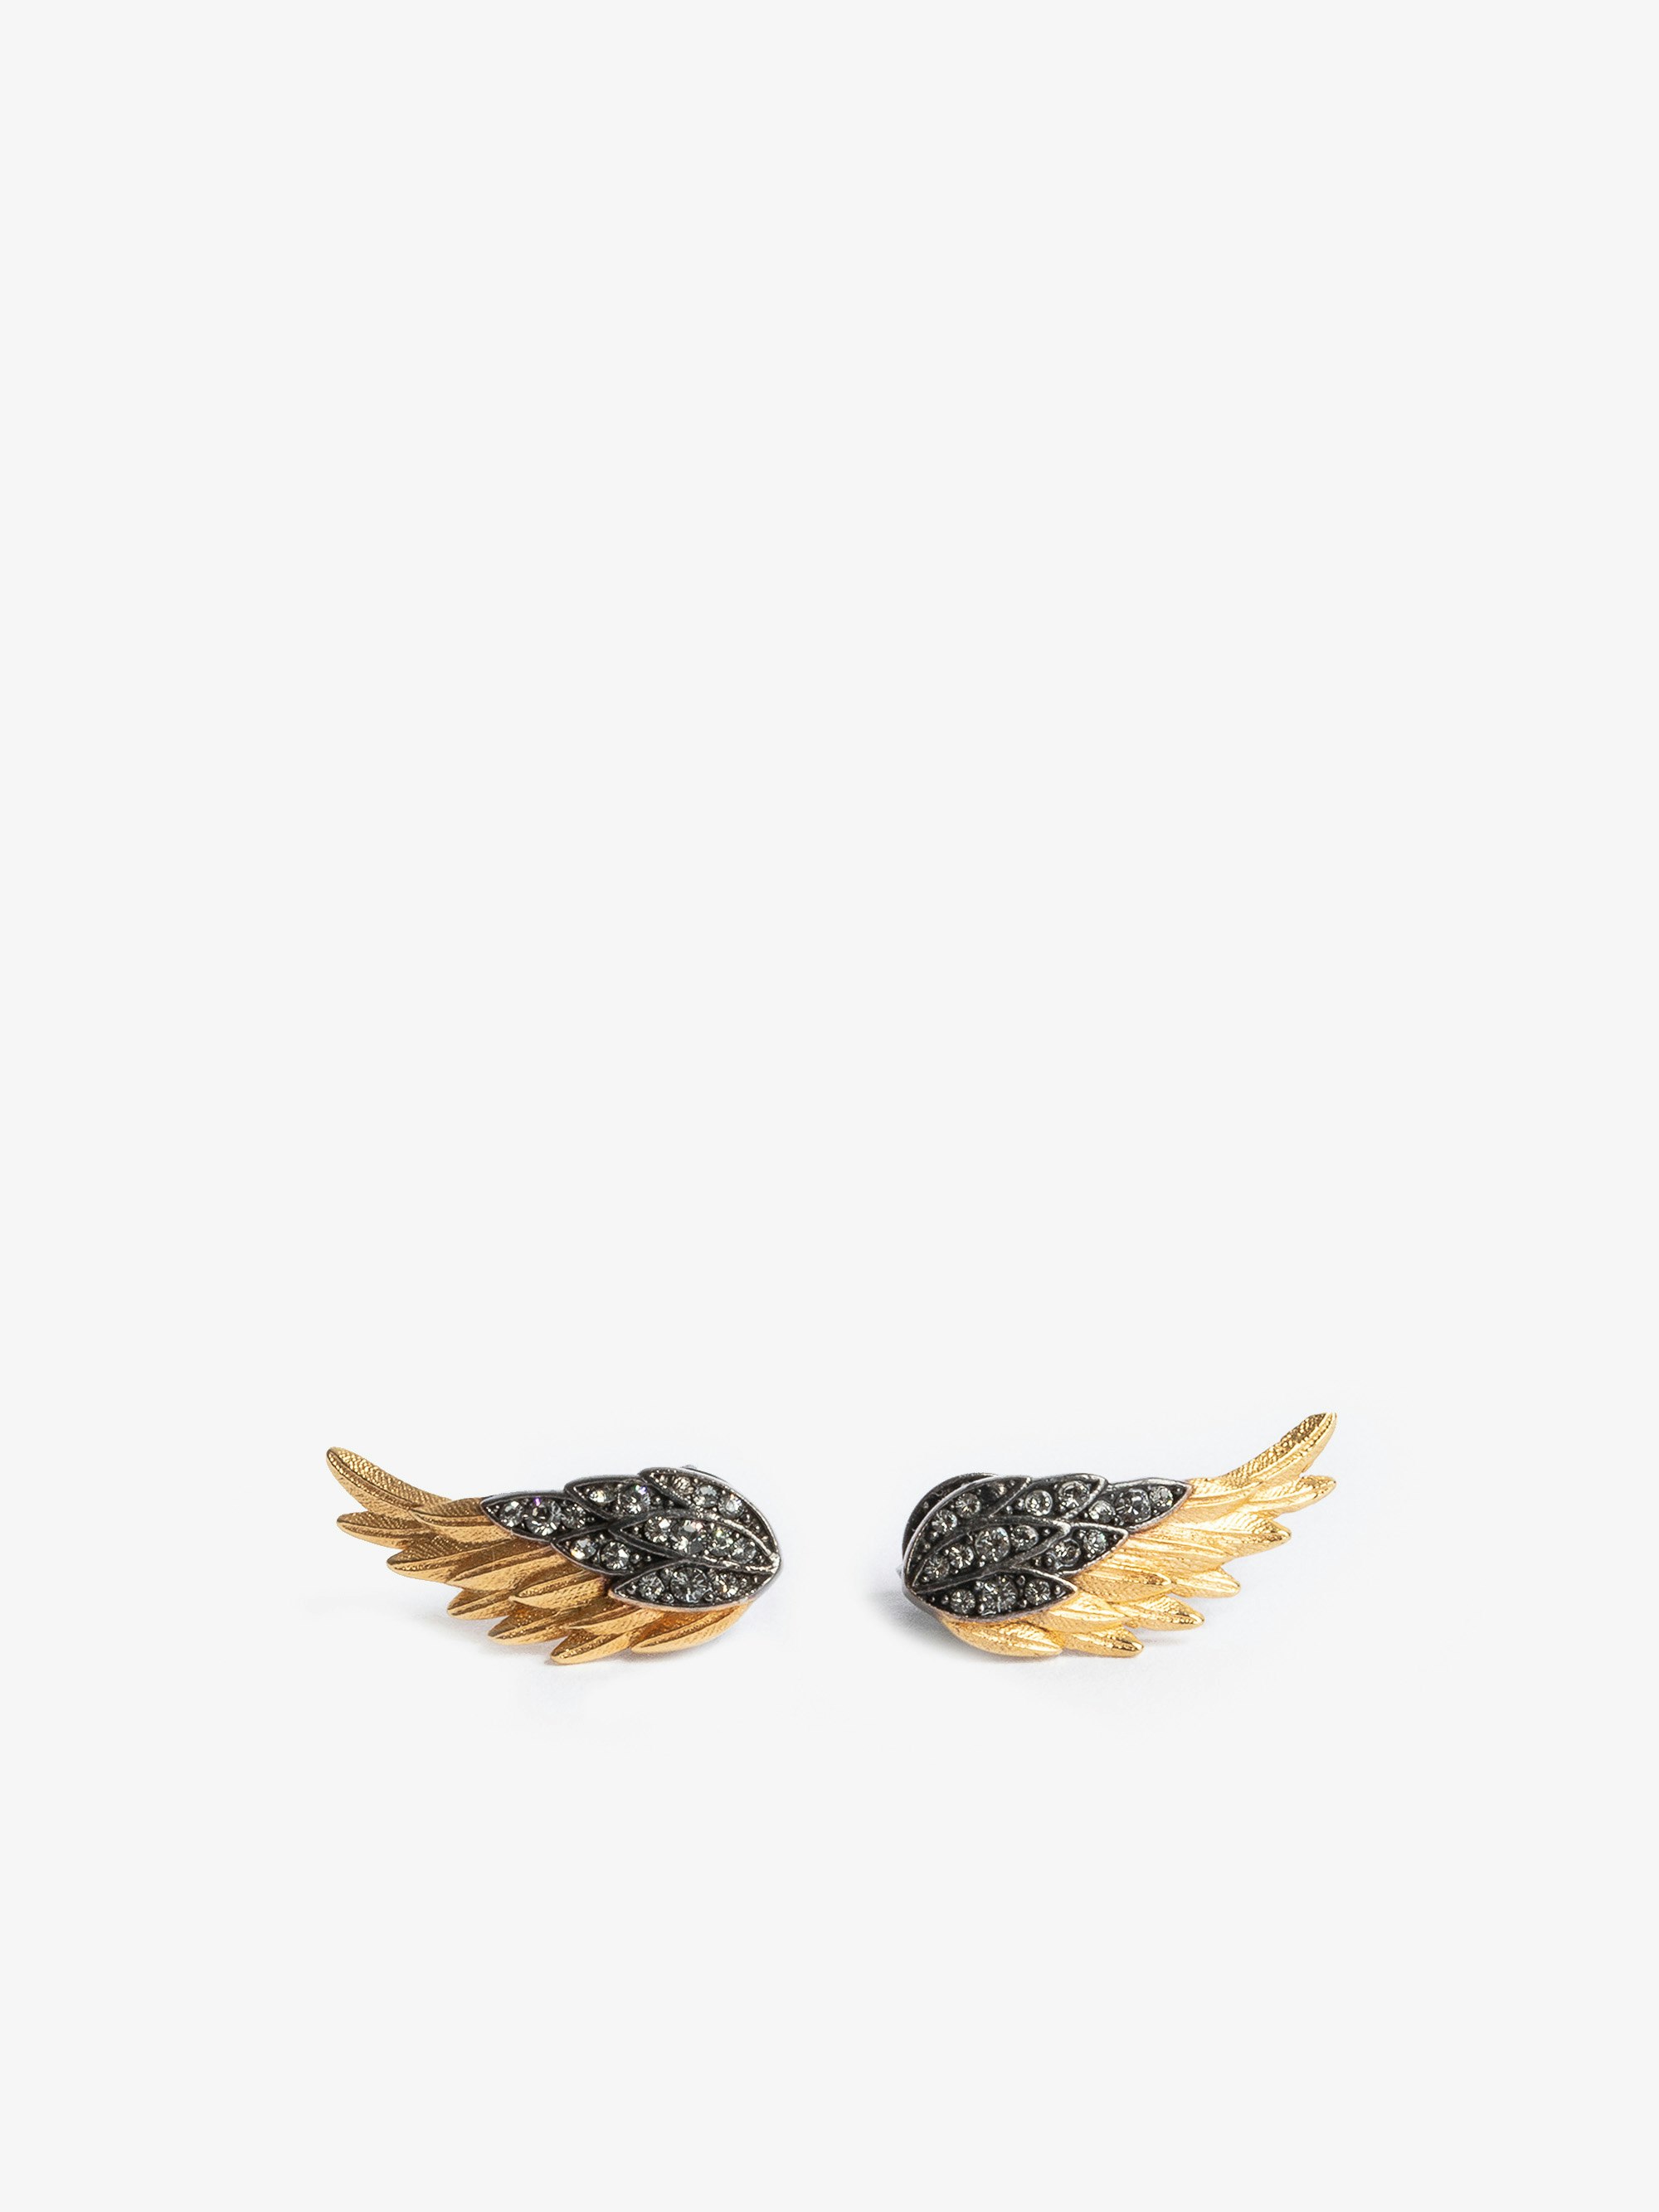 Orecchini Rock Feather - Orecchini a forma di ali in ottone dorato e annerito con strass.